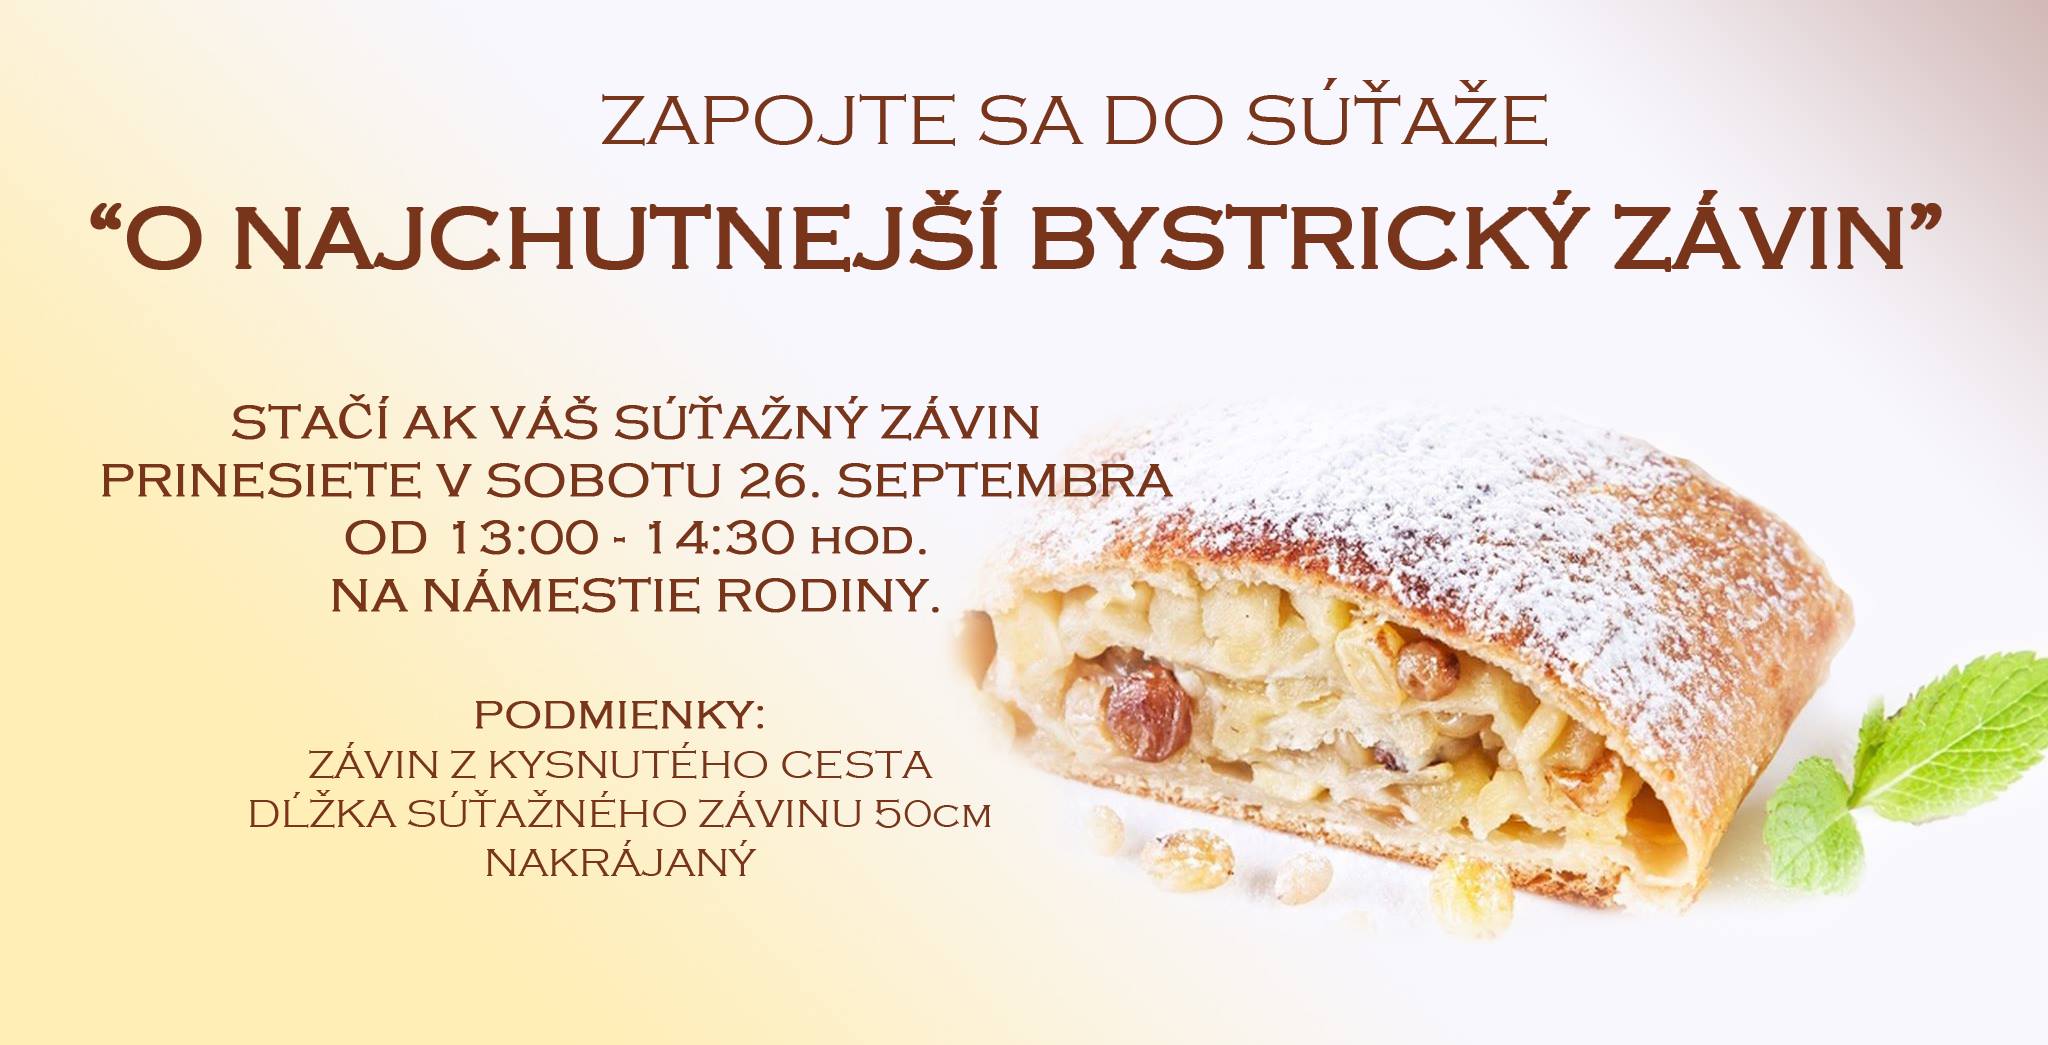 O najchutnejší bystrický závin Záhorská Bystrica 2015